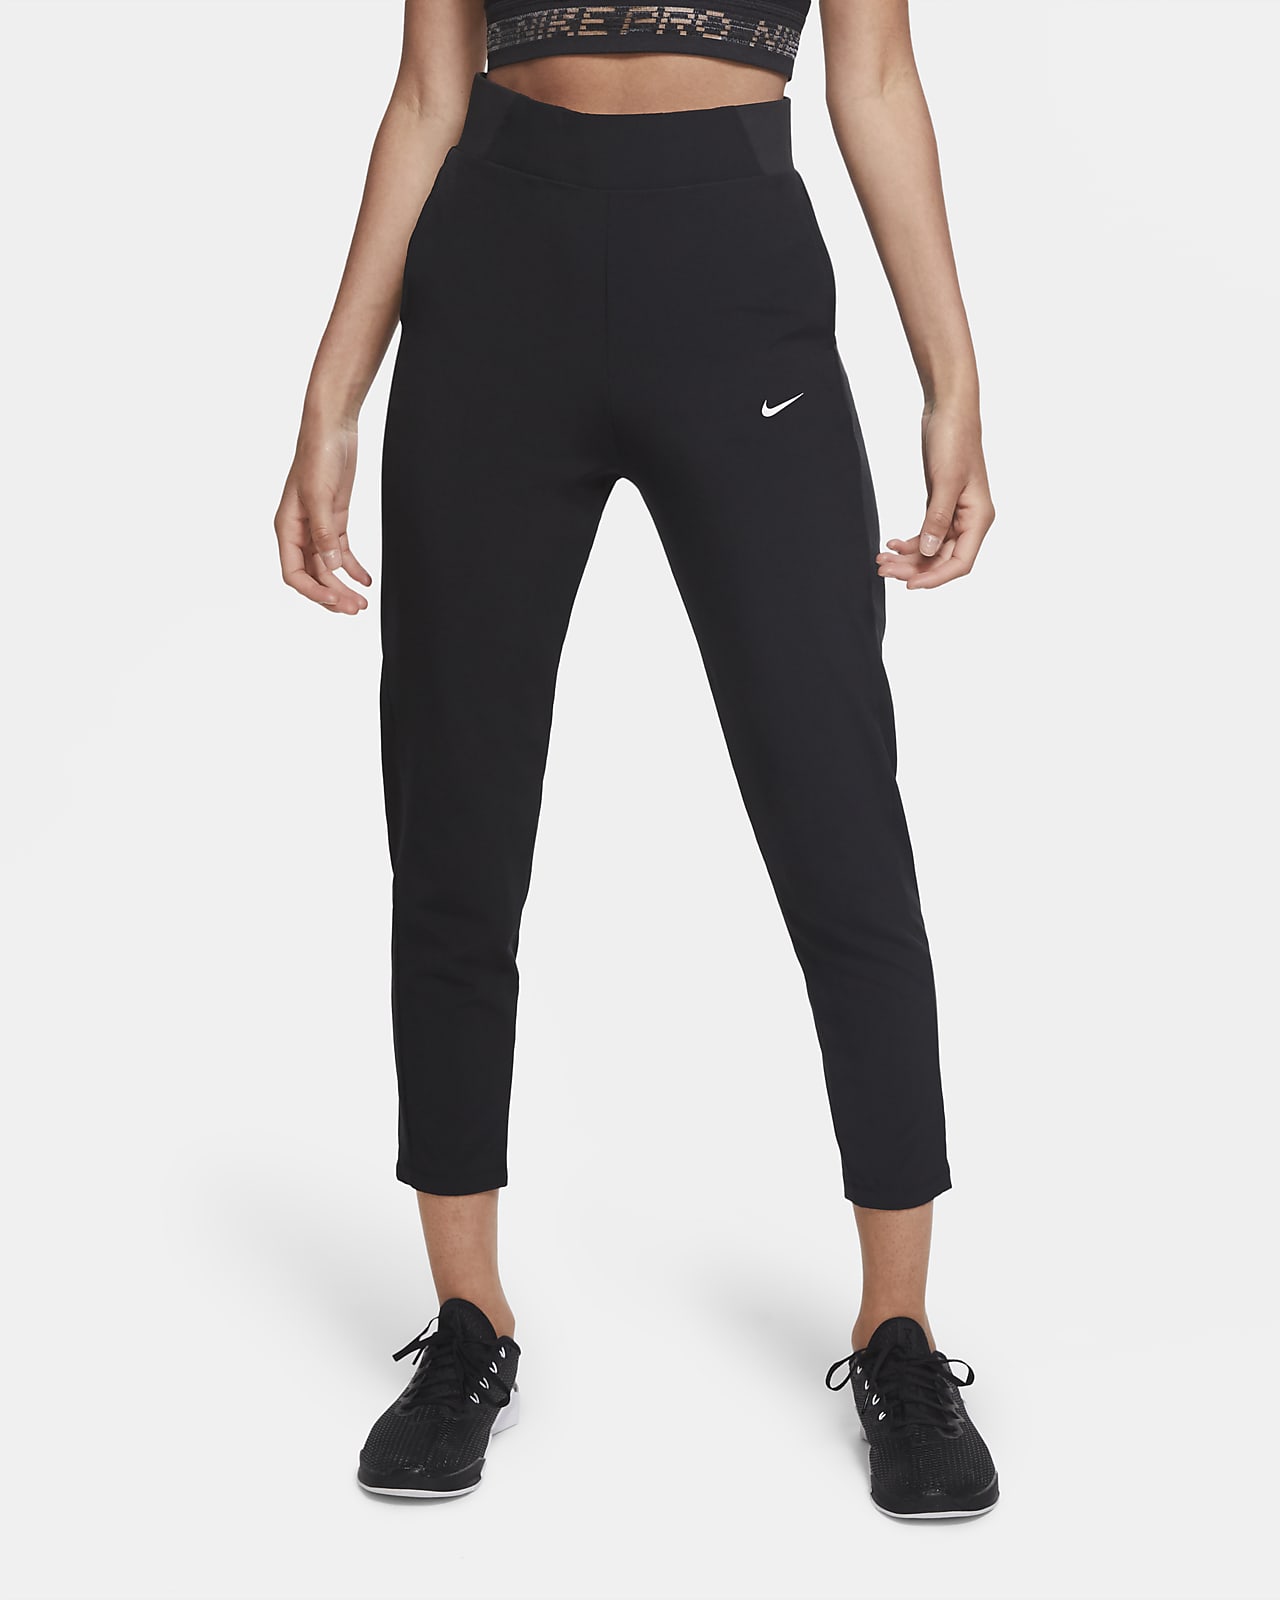 Gaseoso coger un resfriado Fracción Pants de entrenamiento de tiro medio para mujer Nike Dri-FIT Bliss Victory.  Nike MX